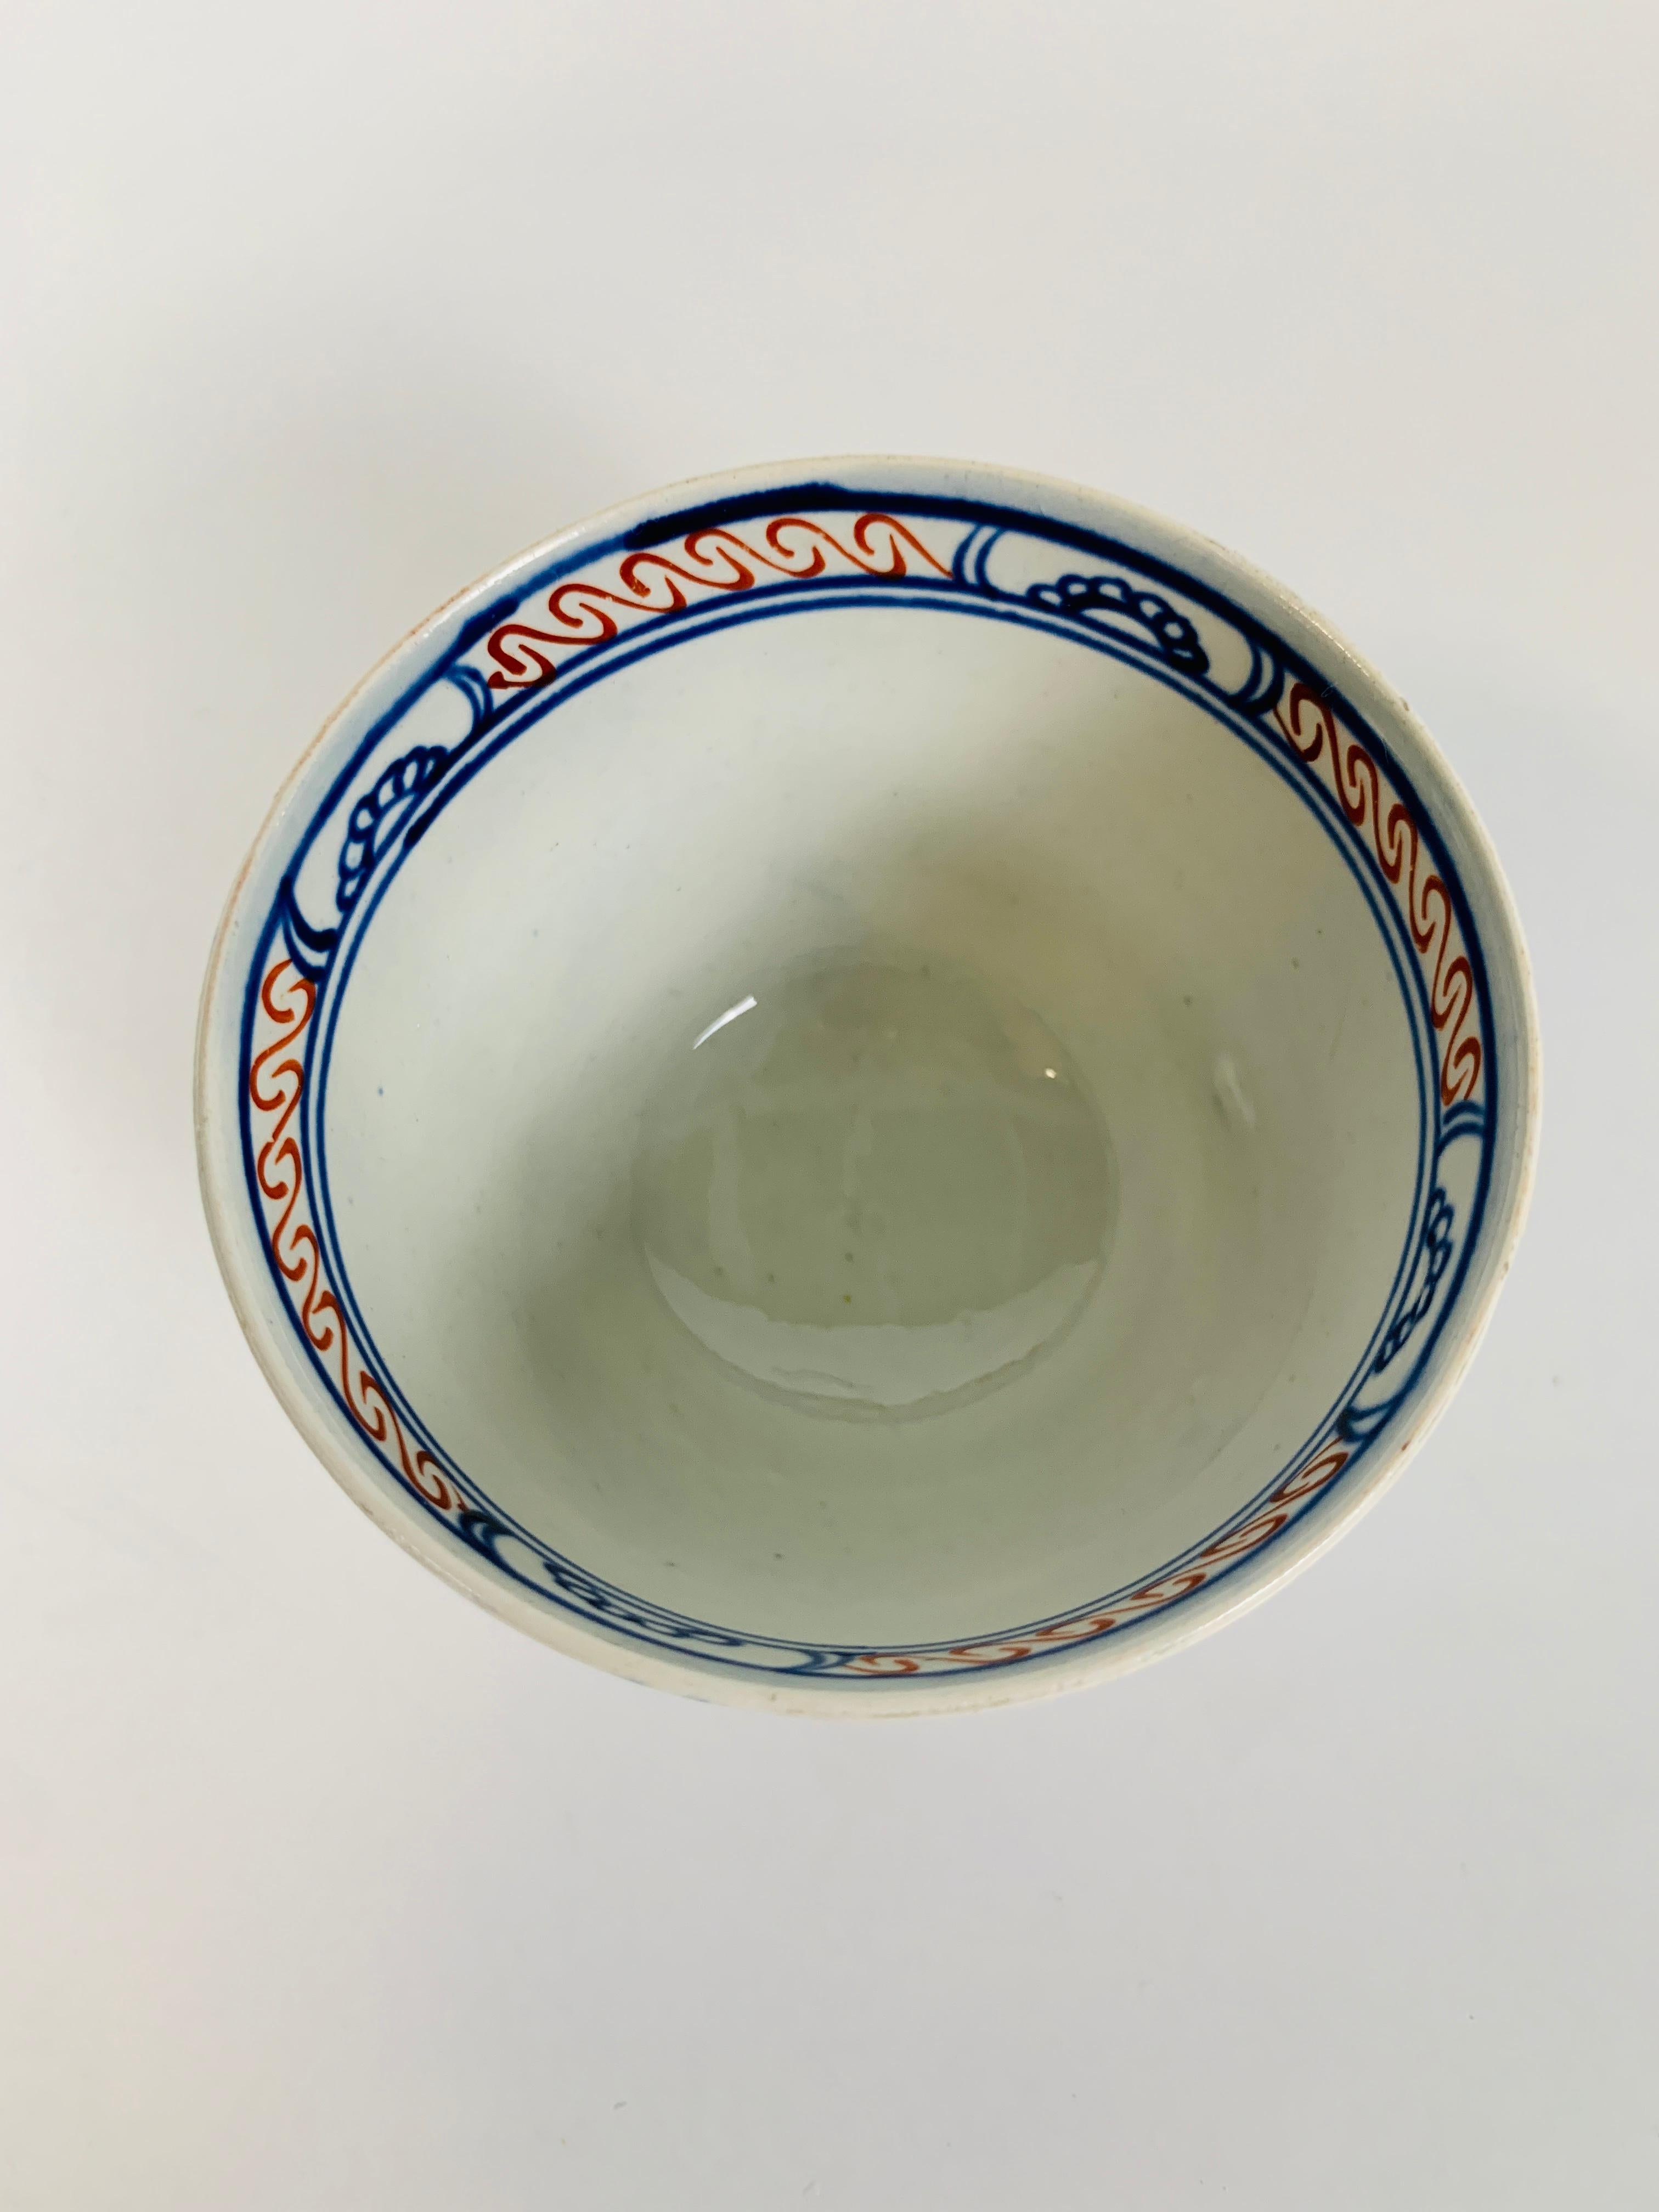 Pair Tea Bowls & Saucers Pearled Creamware Hand-Painted in Imari Colors 18th C 2